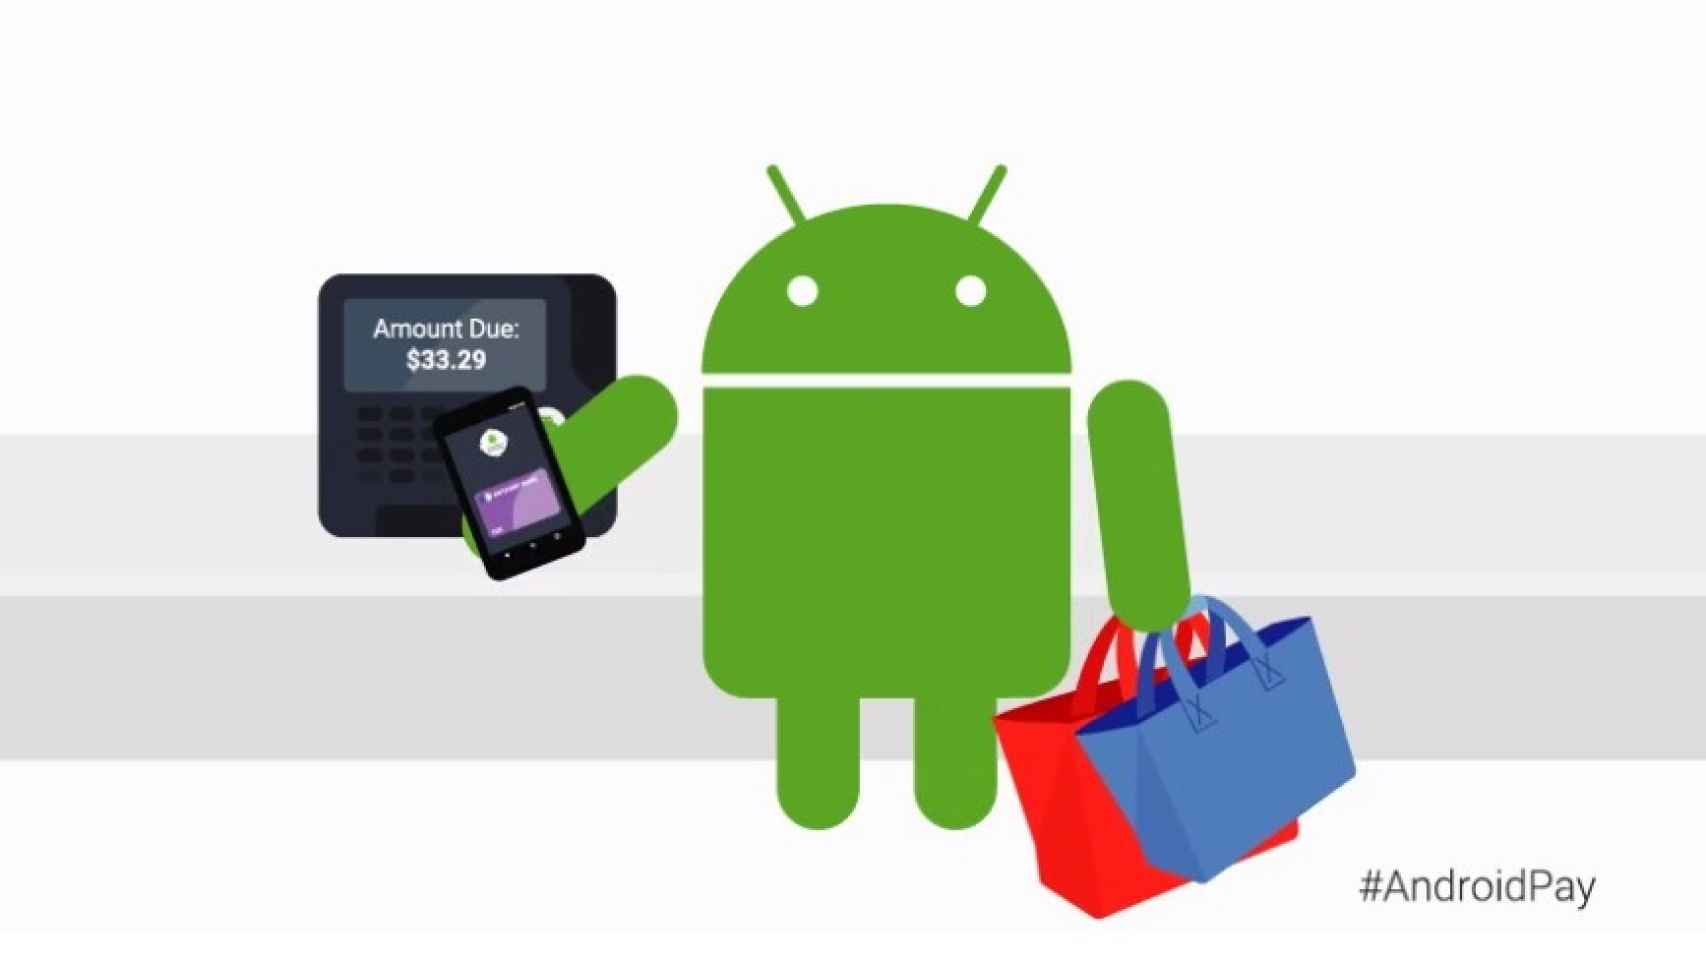 Google confirma que Android Pay llegará a España, pero no cuándo